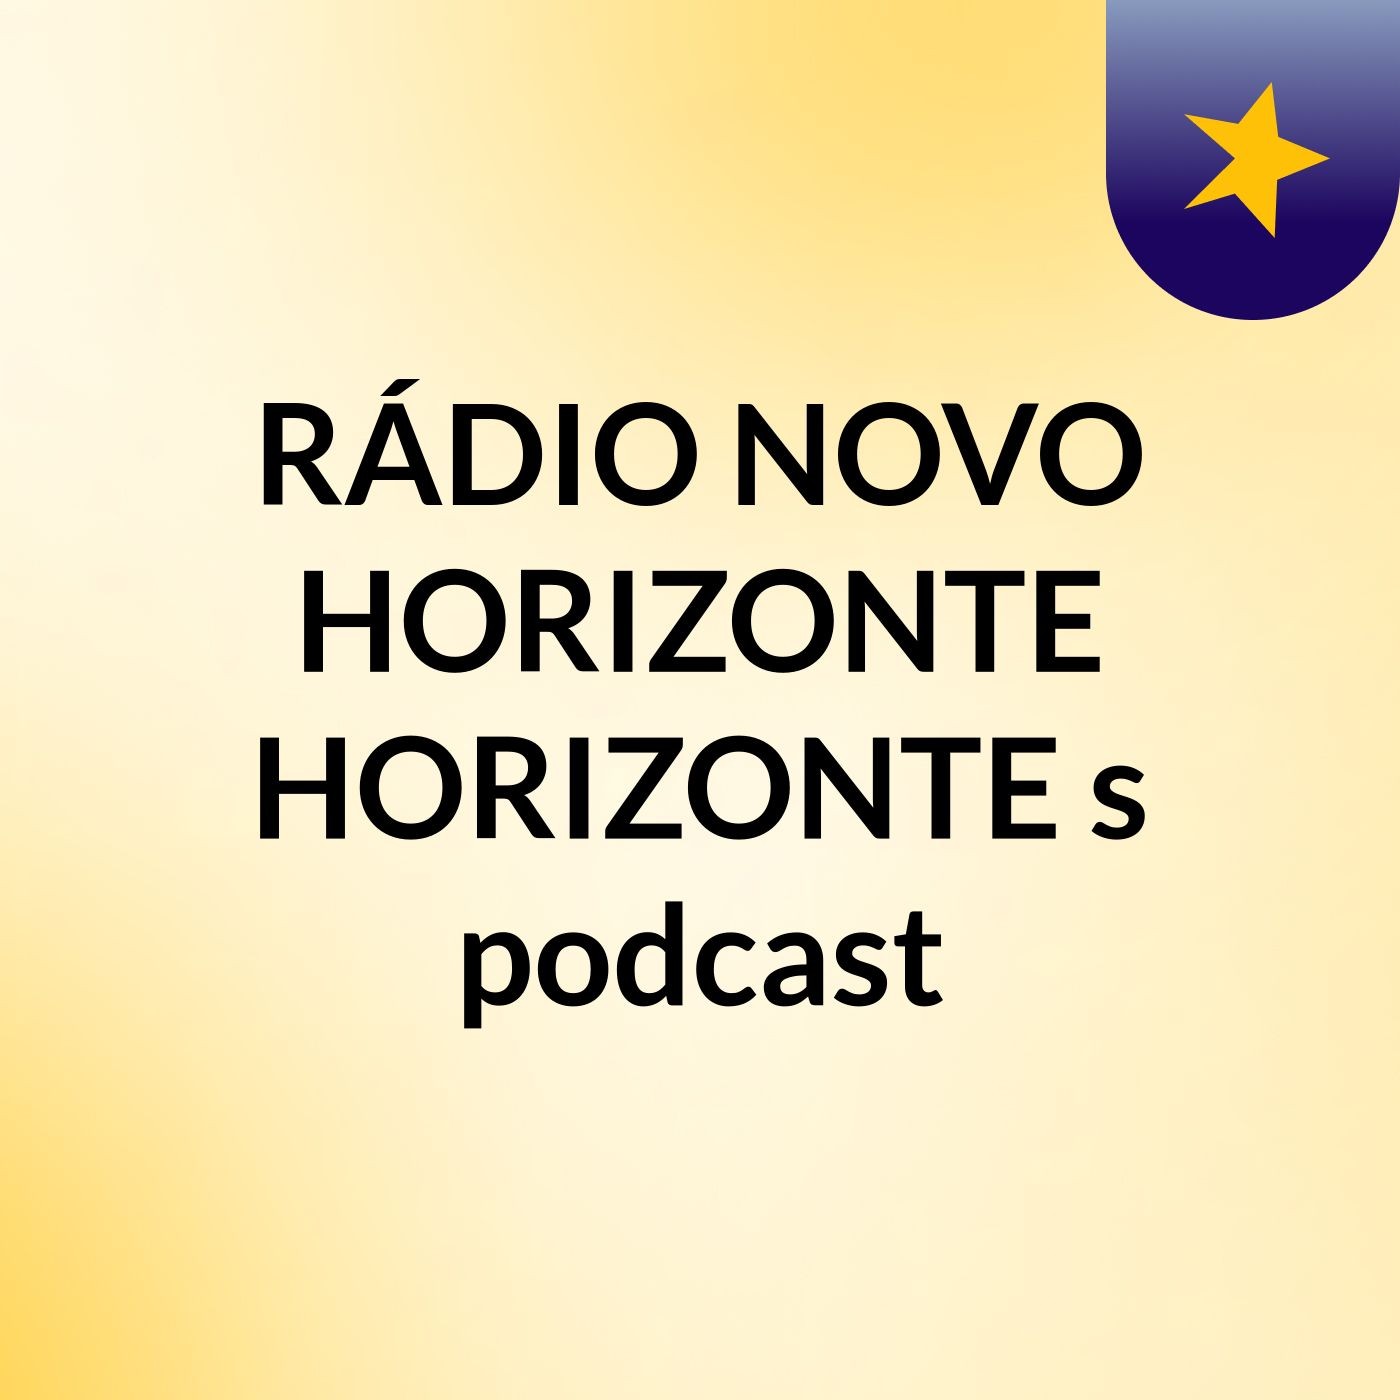 RÁDIO NOVO HORIZONTE HORIZONTE's podcast